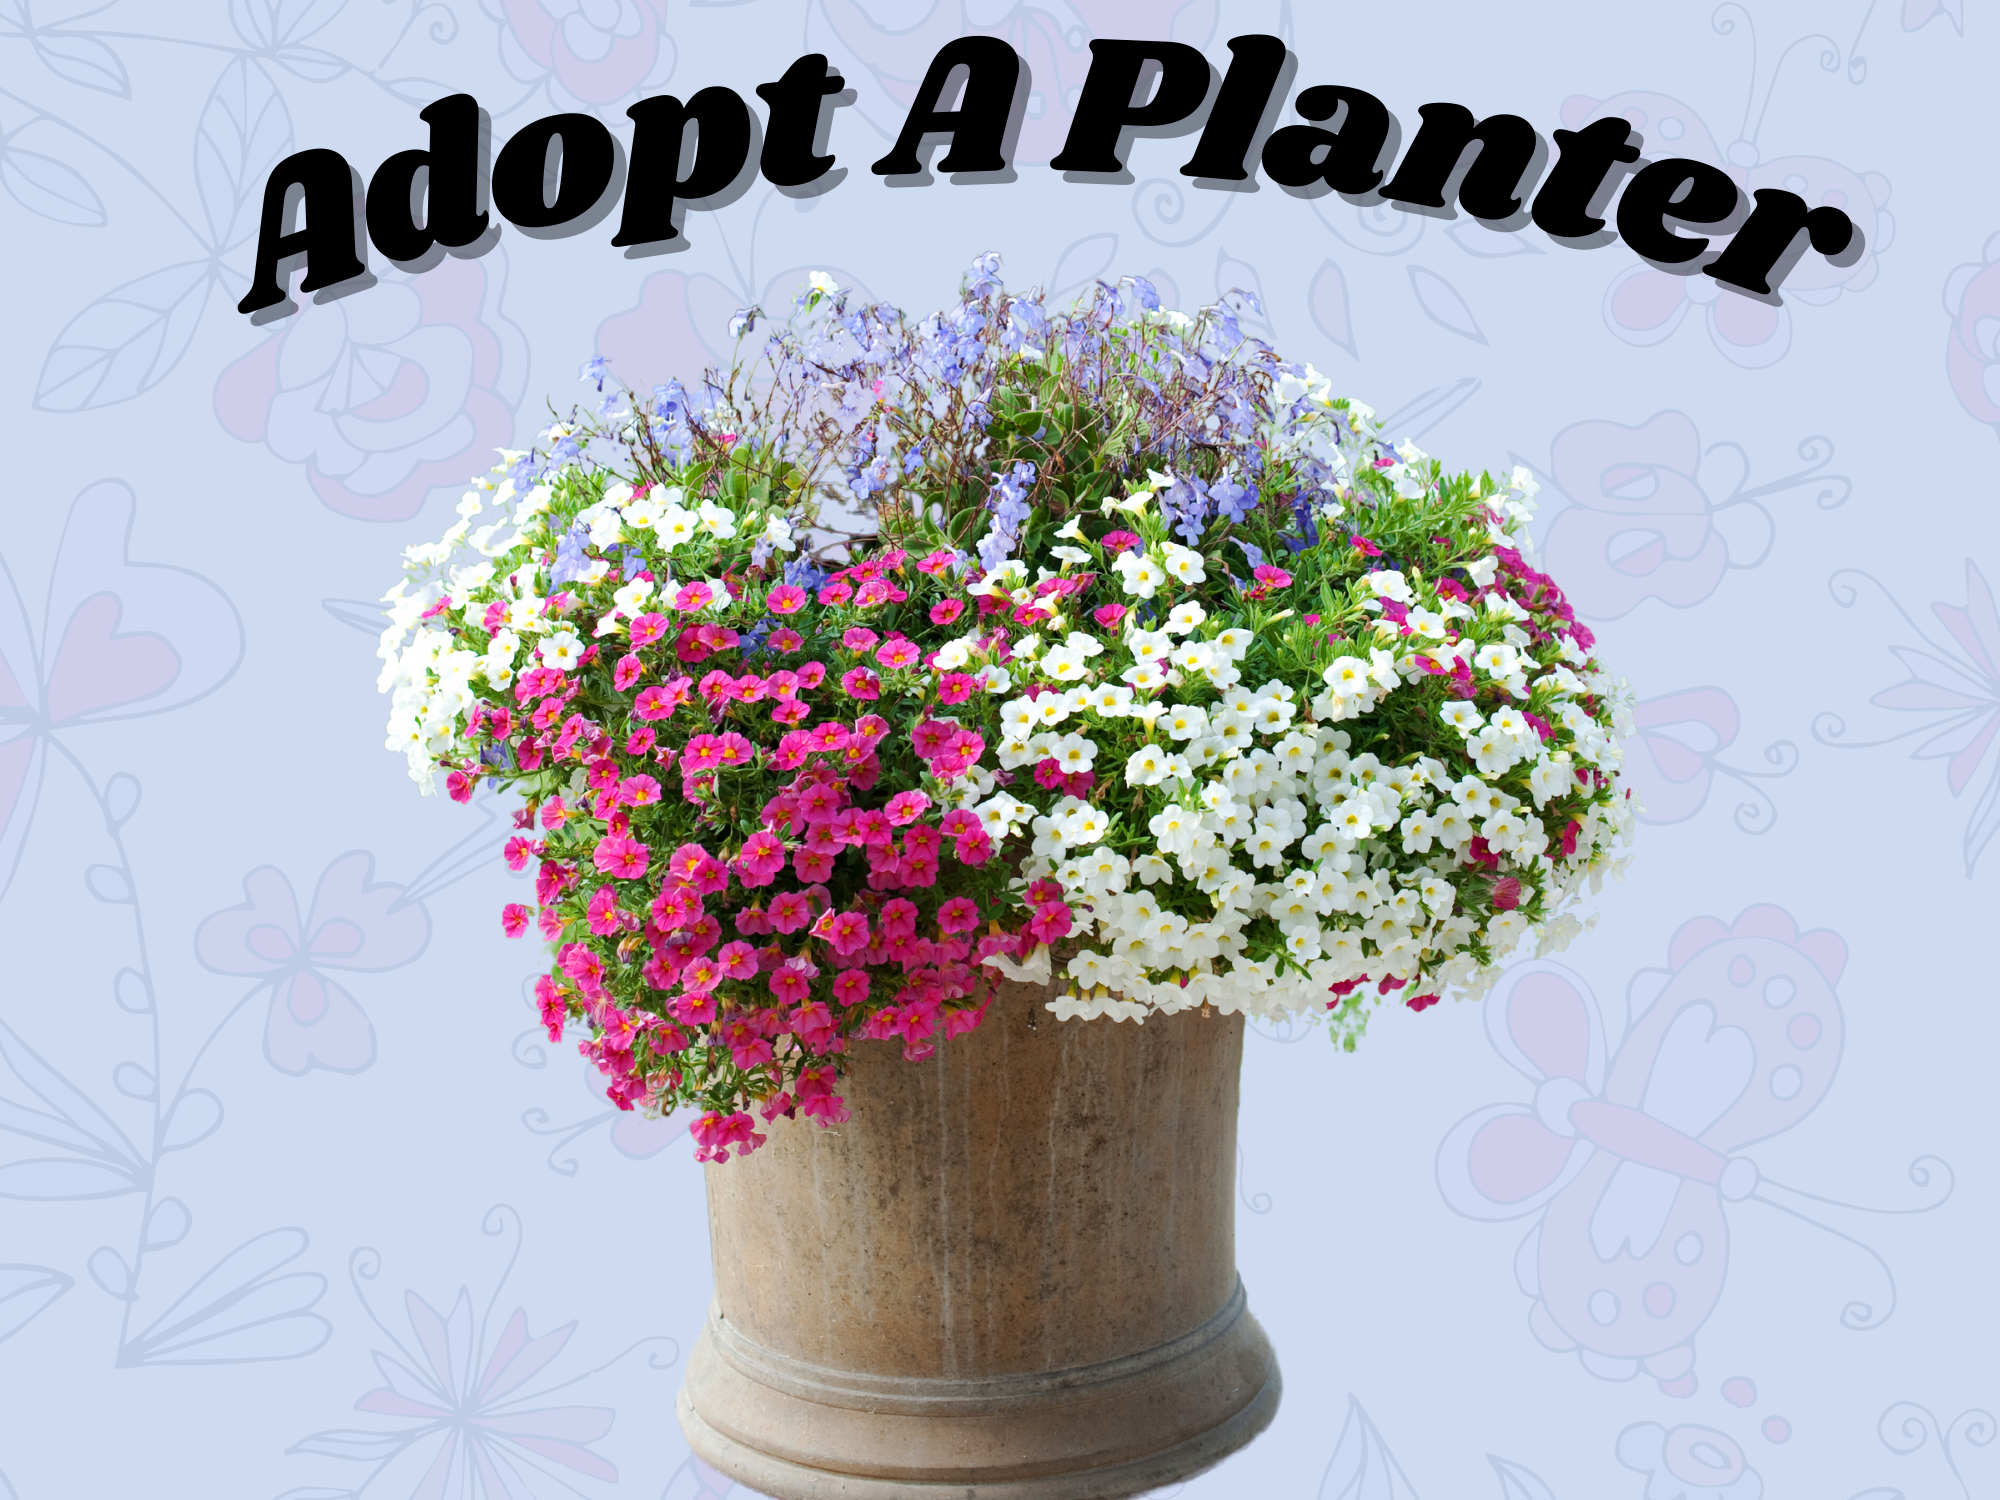 Adopt-A-Planter